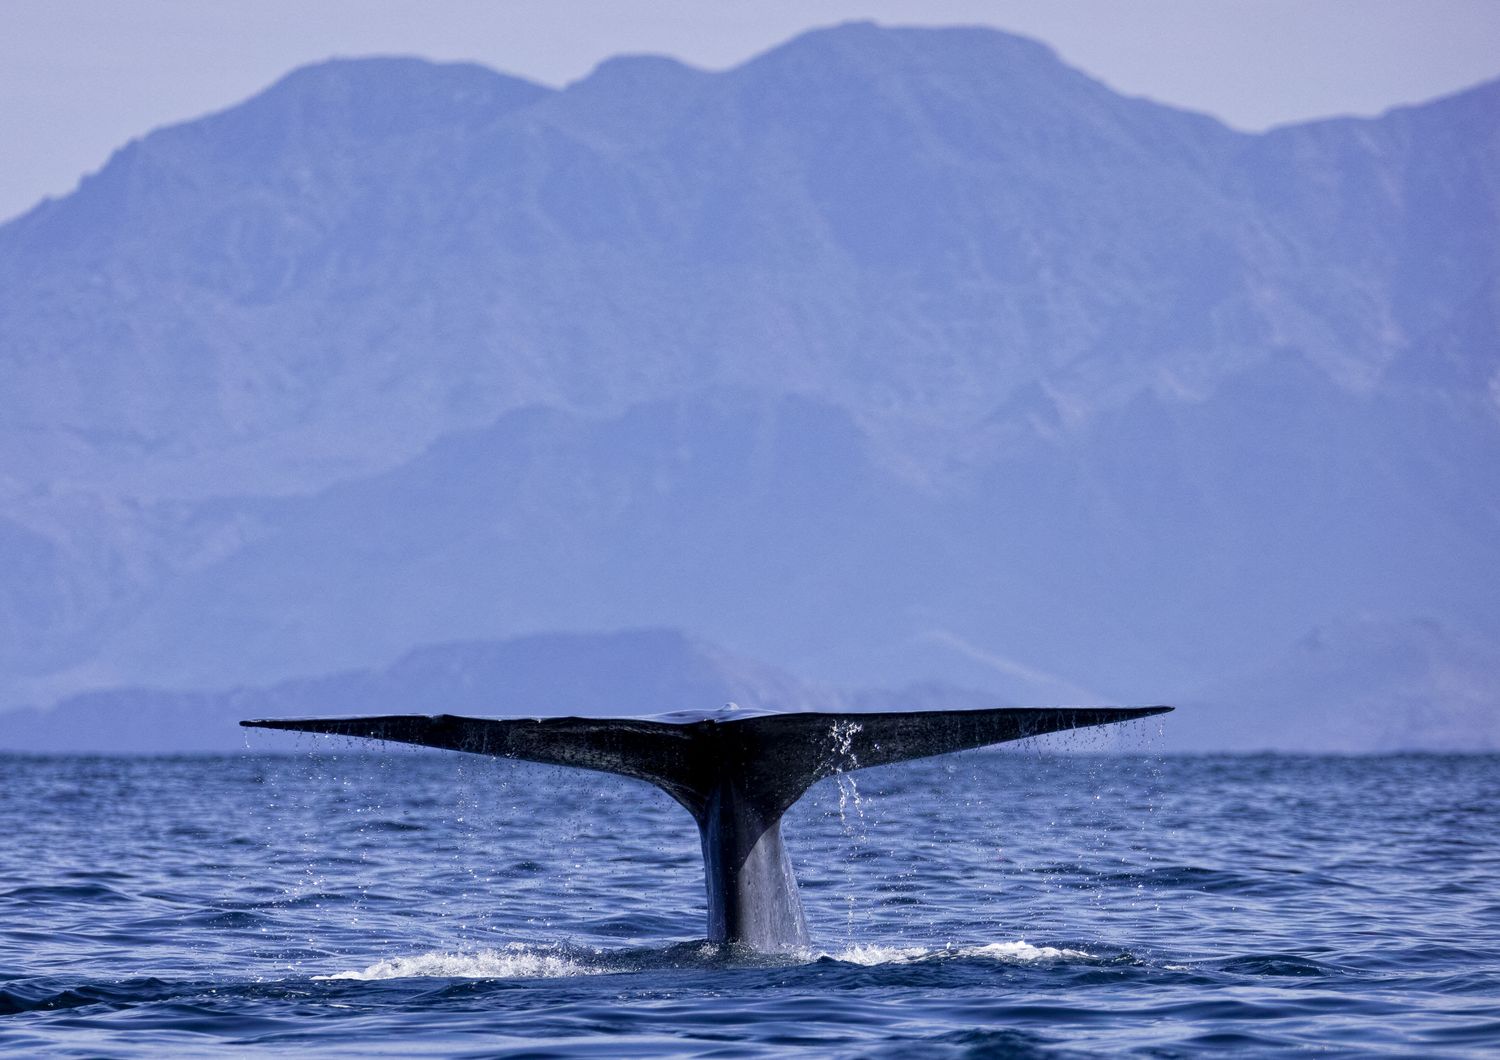 Balena nel Golfo del Messico